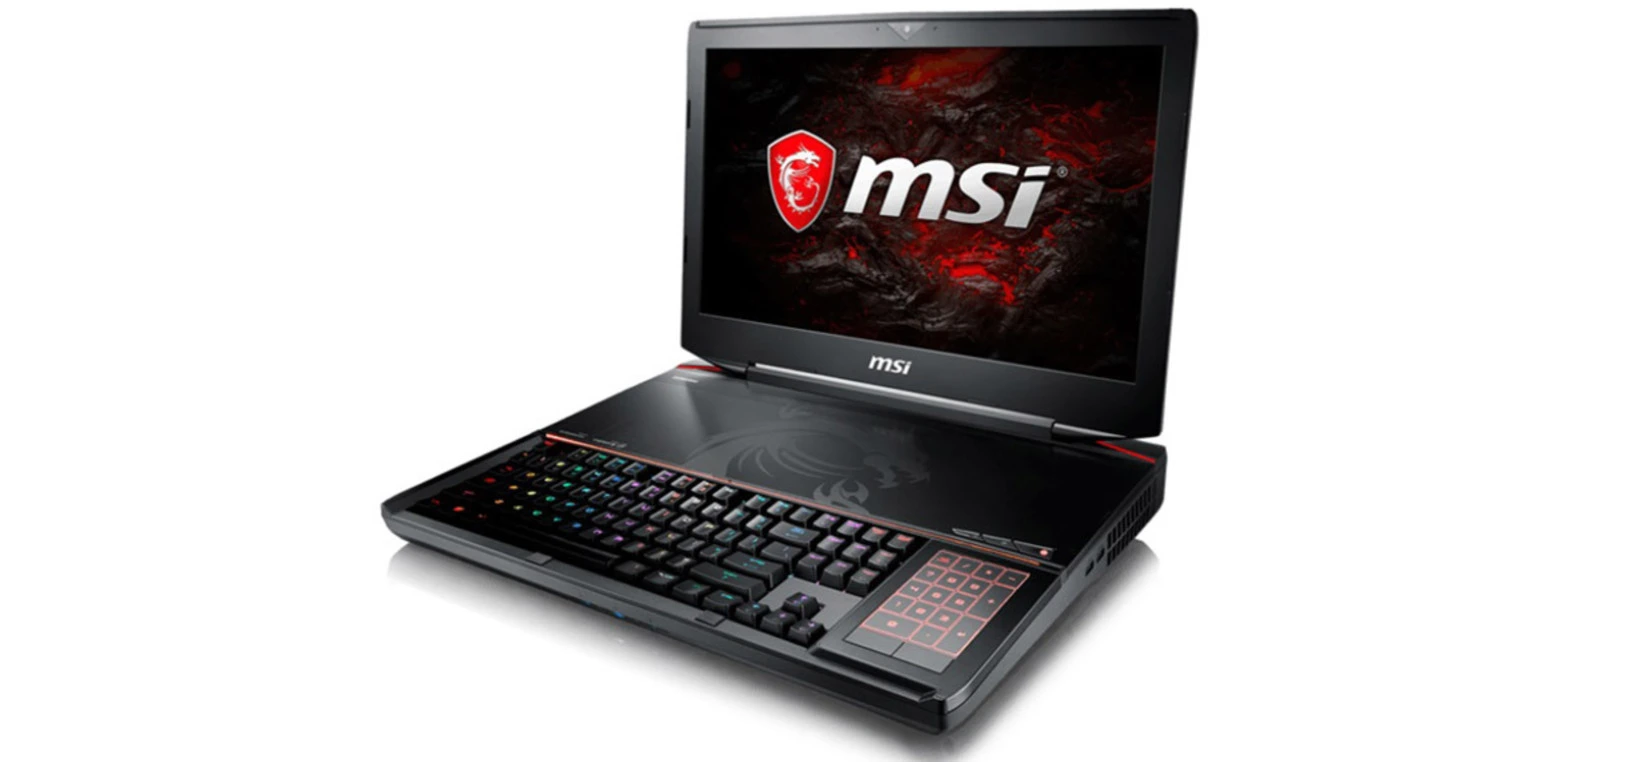 Device msi. MSI gt83vr Titan SLI. Игровой ноутбук MSI С механической клавиатурой. Ноутбук MSI Intel Core i7. Ноутбук MSI vr602.